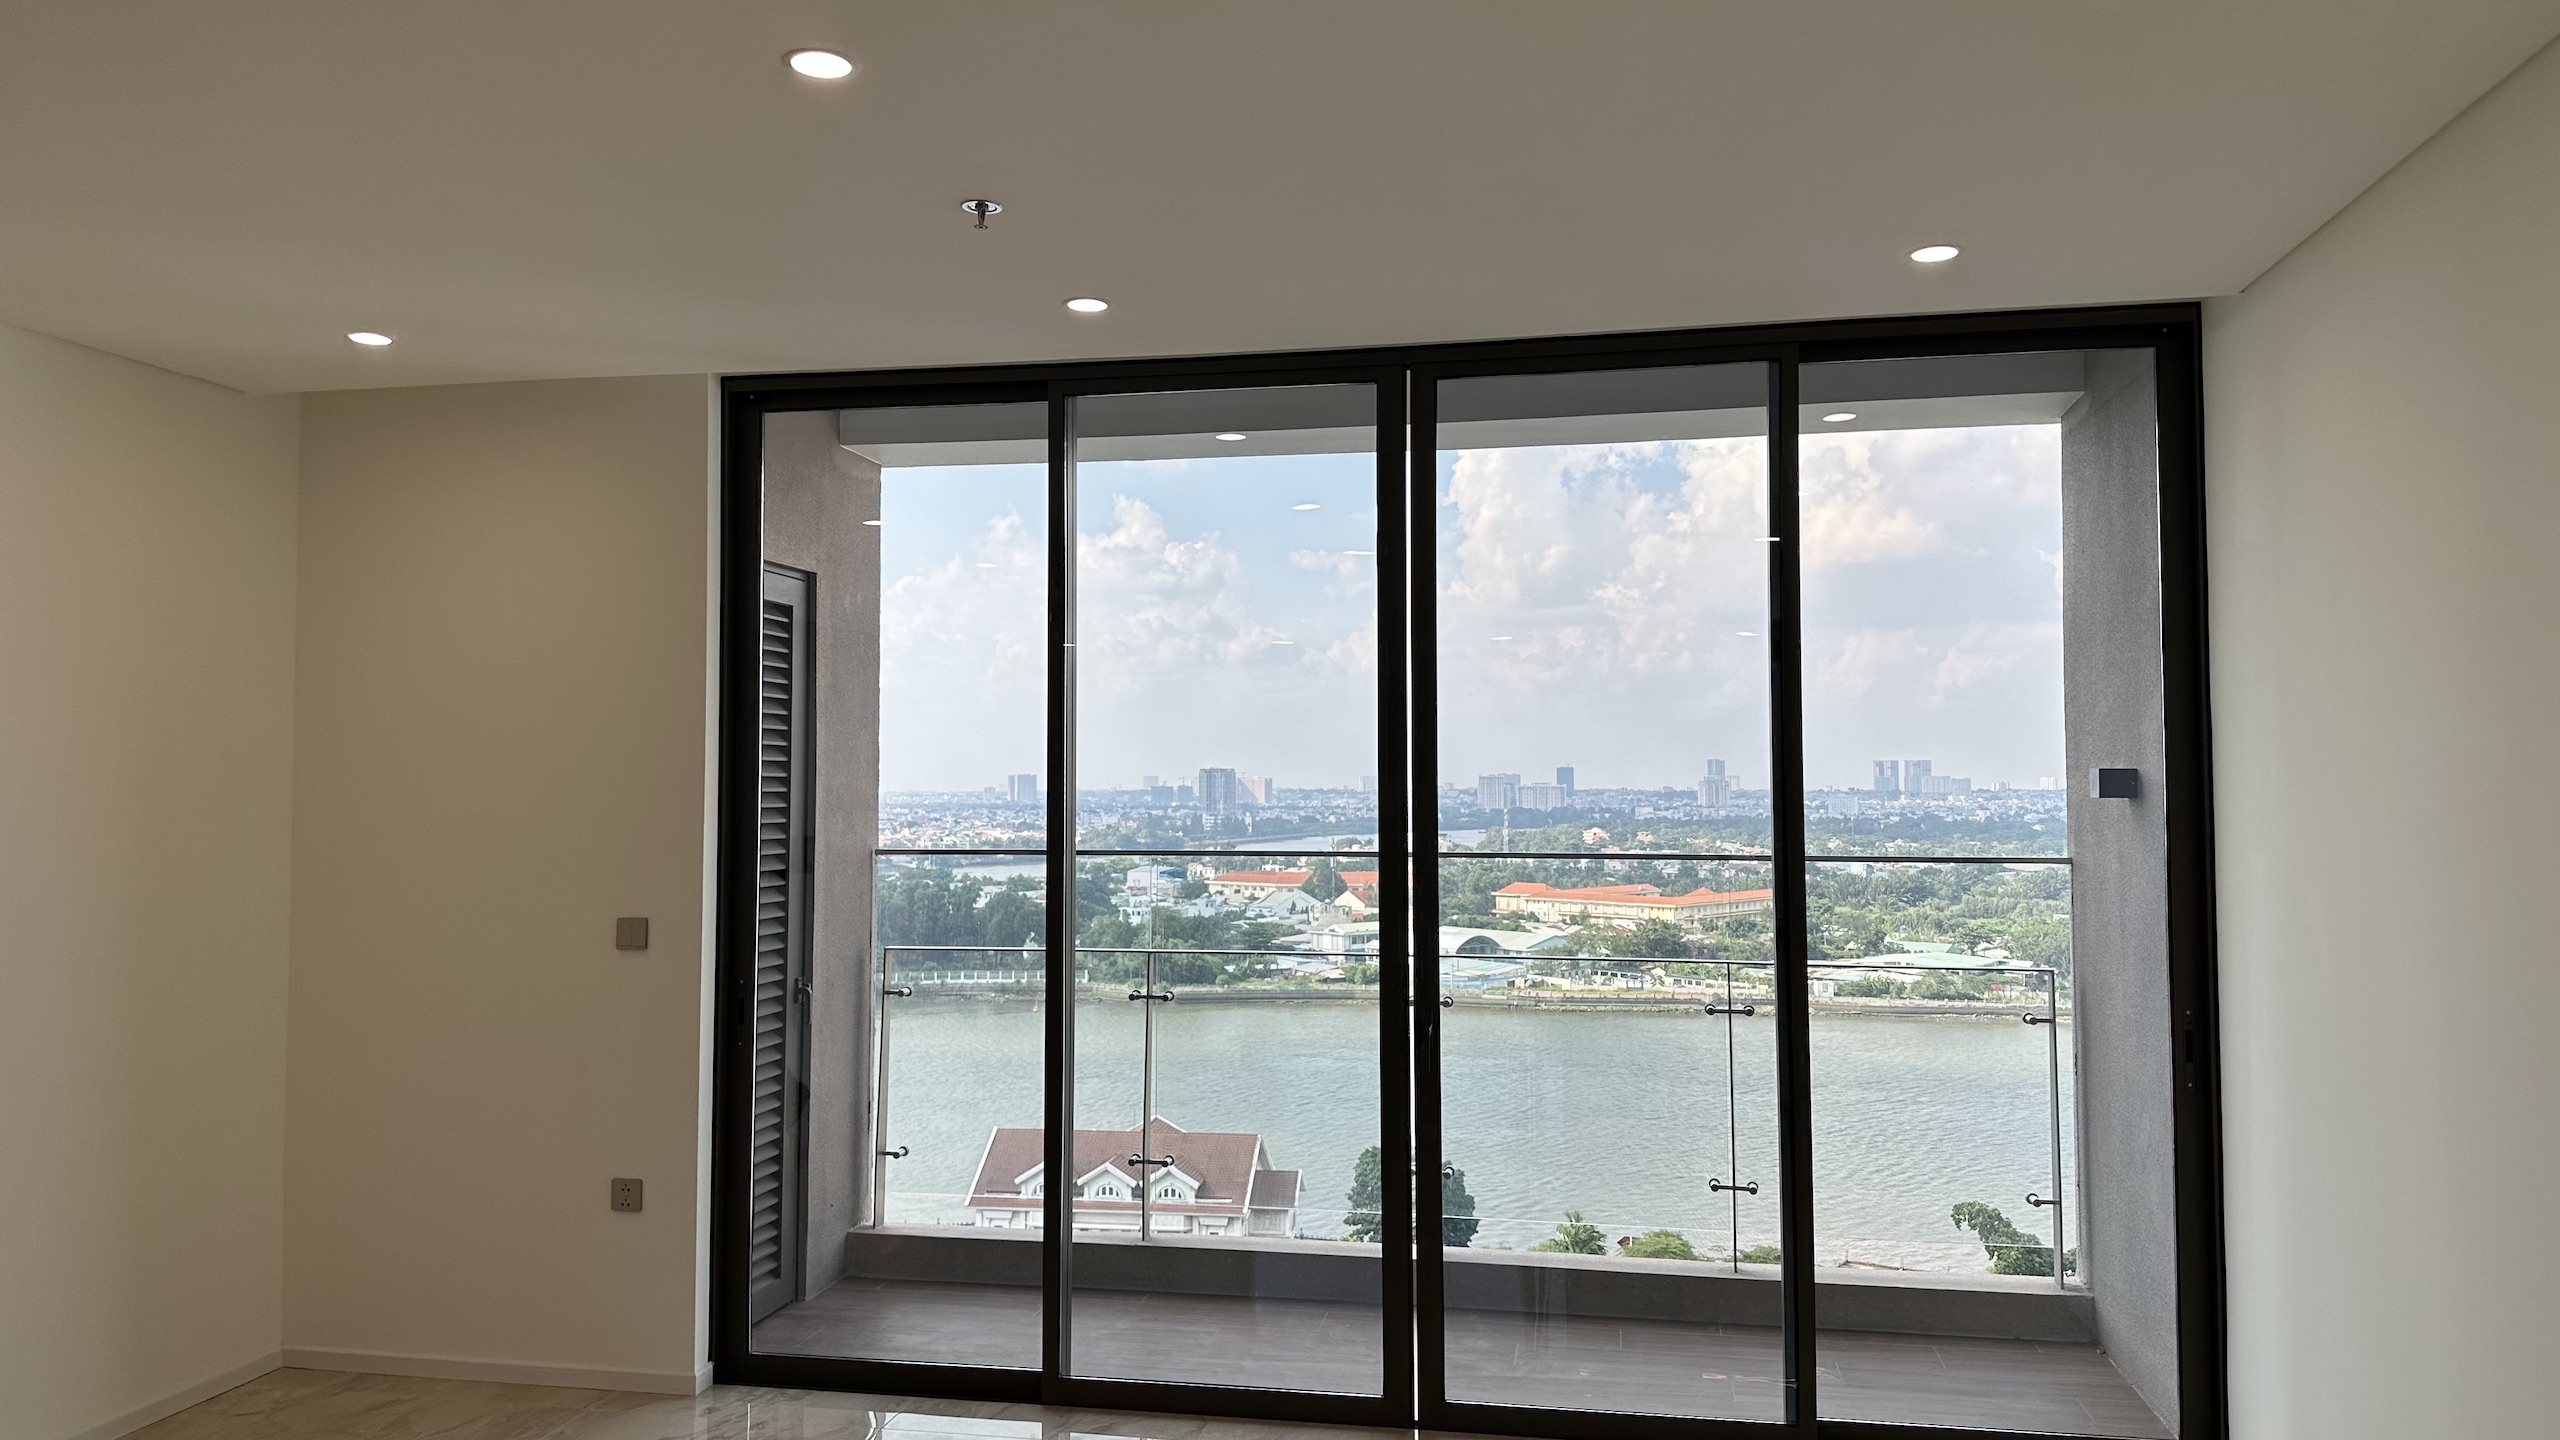 Cho thuê căn hộ 2 phòng ngủ Thảo Điền Green 83m2, ntcb, view sông, giá thuê 33 triệu 1 tháng